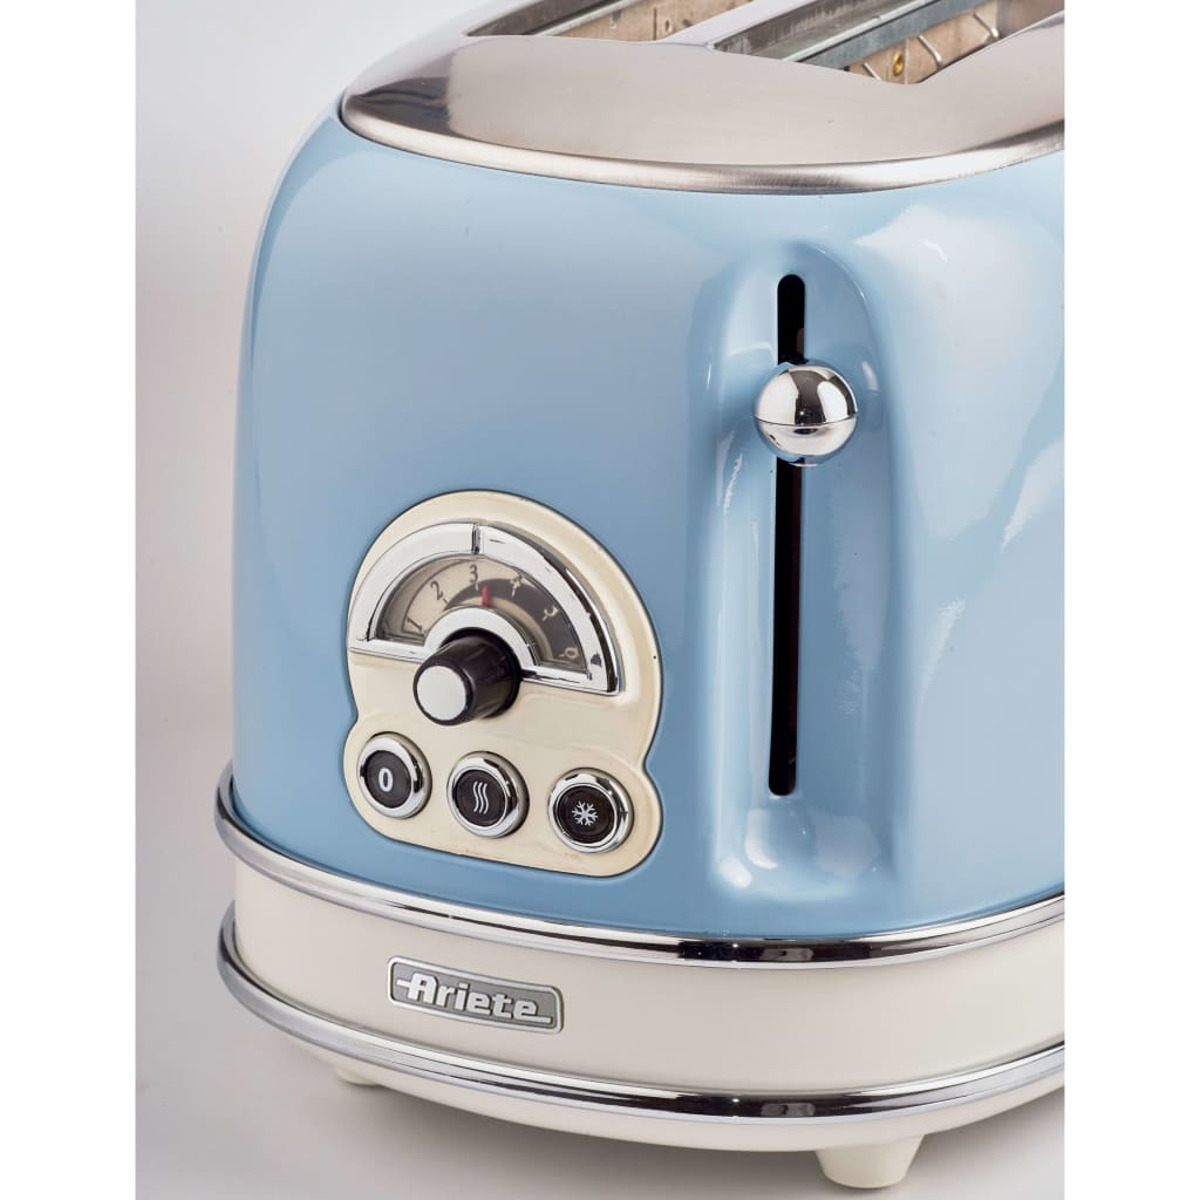 Blau Schlitze: 1) ARIETE Watt, Toaster (810 431441